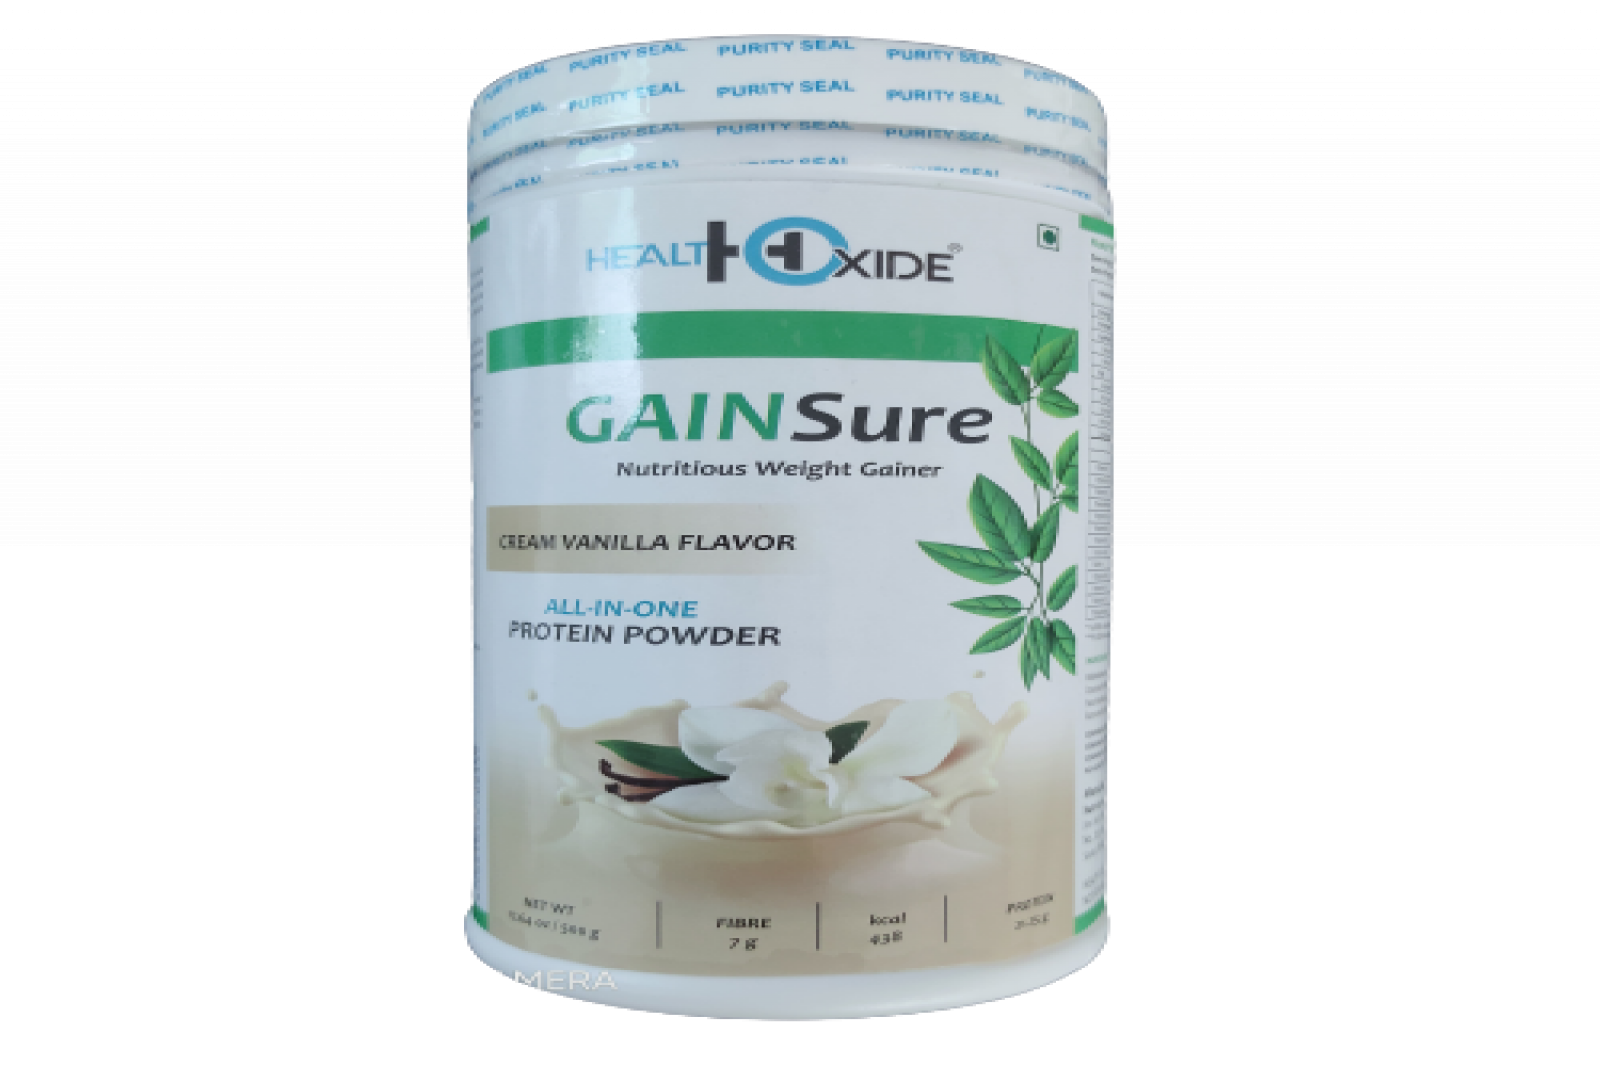 Healthoxide Gainsure Weight Gainer protein powder